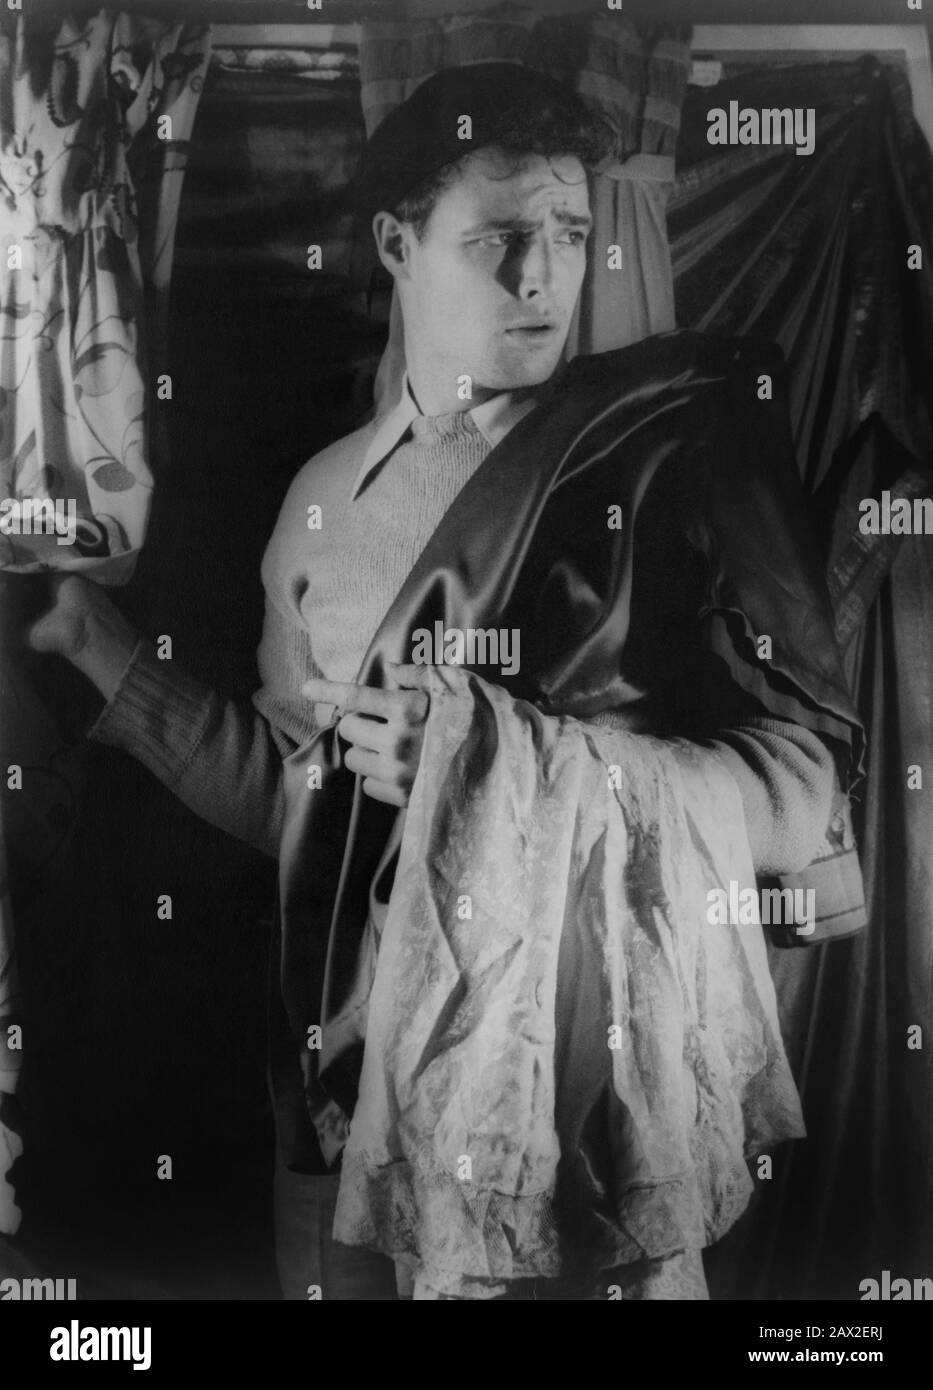 1948 , 27 décembre , USA : le futur acteur de cinéma MARLON BRANDO ( 1924 - 2004 ) dans son rôle de théâtre dans ' UN Streetcar Nommé Désir ' par Tennessee Williams , photographié par l'écrivain , critique , peintre et photographe CARL VAN VECHTEN ( 1880 - 1964 ) - AUTORITRATTO - selfportrait - FOTO STORICA STORICHE - HISTOIRE - CINÉMA - TEATRO - THATRE - gay - omosessuale - omosessualità - LGBT - - homosexualité - basco - cappello - chapeau - golf - maglione di lana - col - coletto - PAS POUR UTILISATION DE PUBBLICITARY ---- NON CONFORME USO PUBBLICITARIO ----------------------------------------------- Banque D'Images